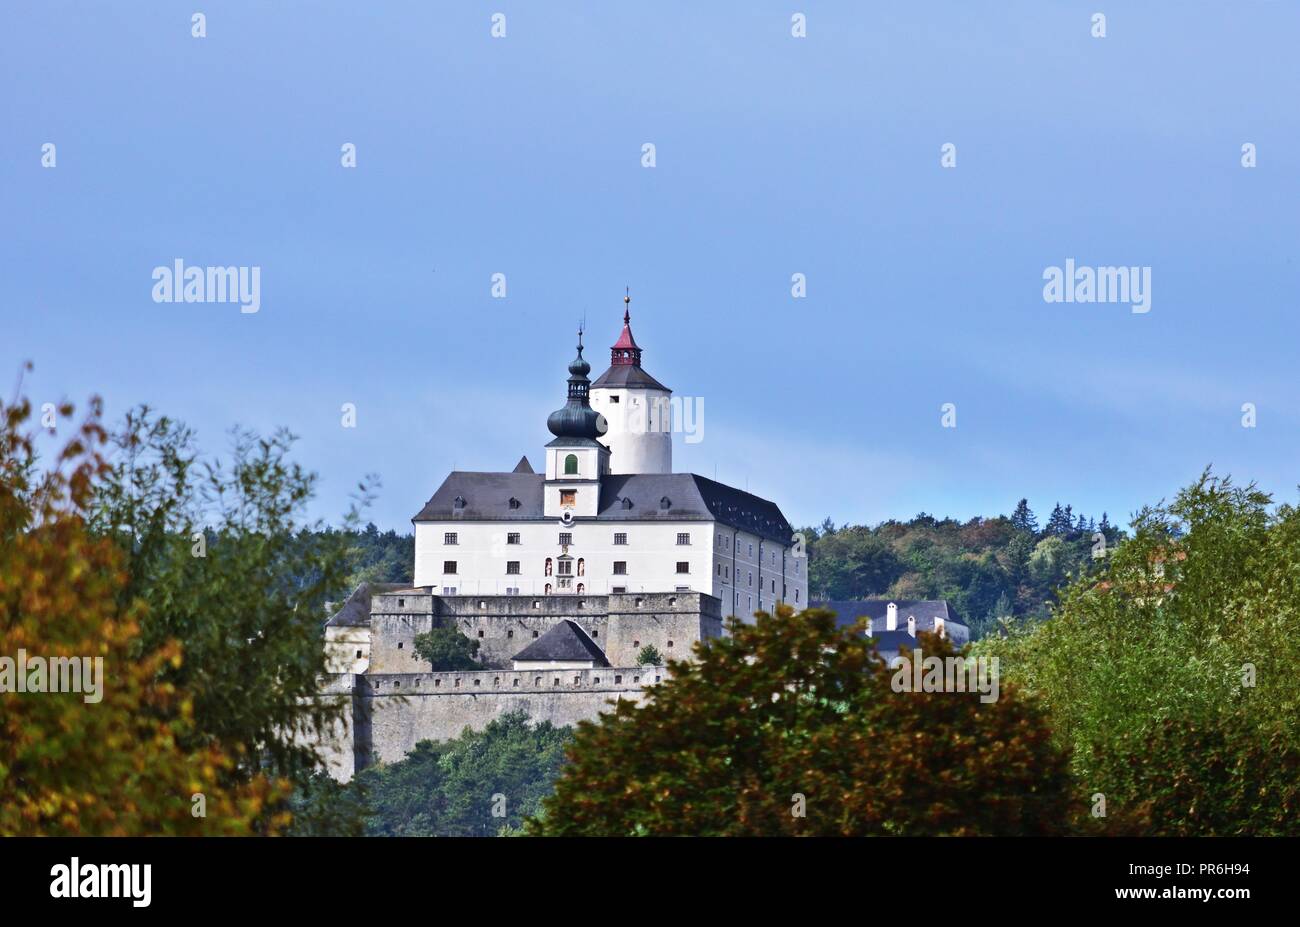 Forchtenstein Castle in Austria Stock Photo